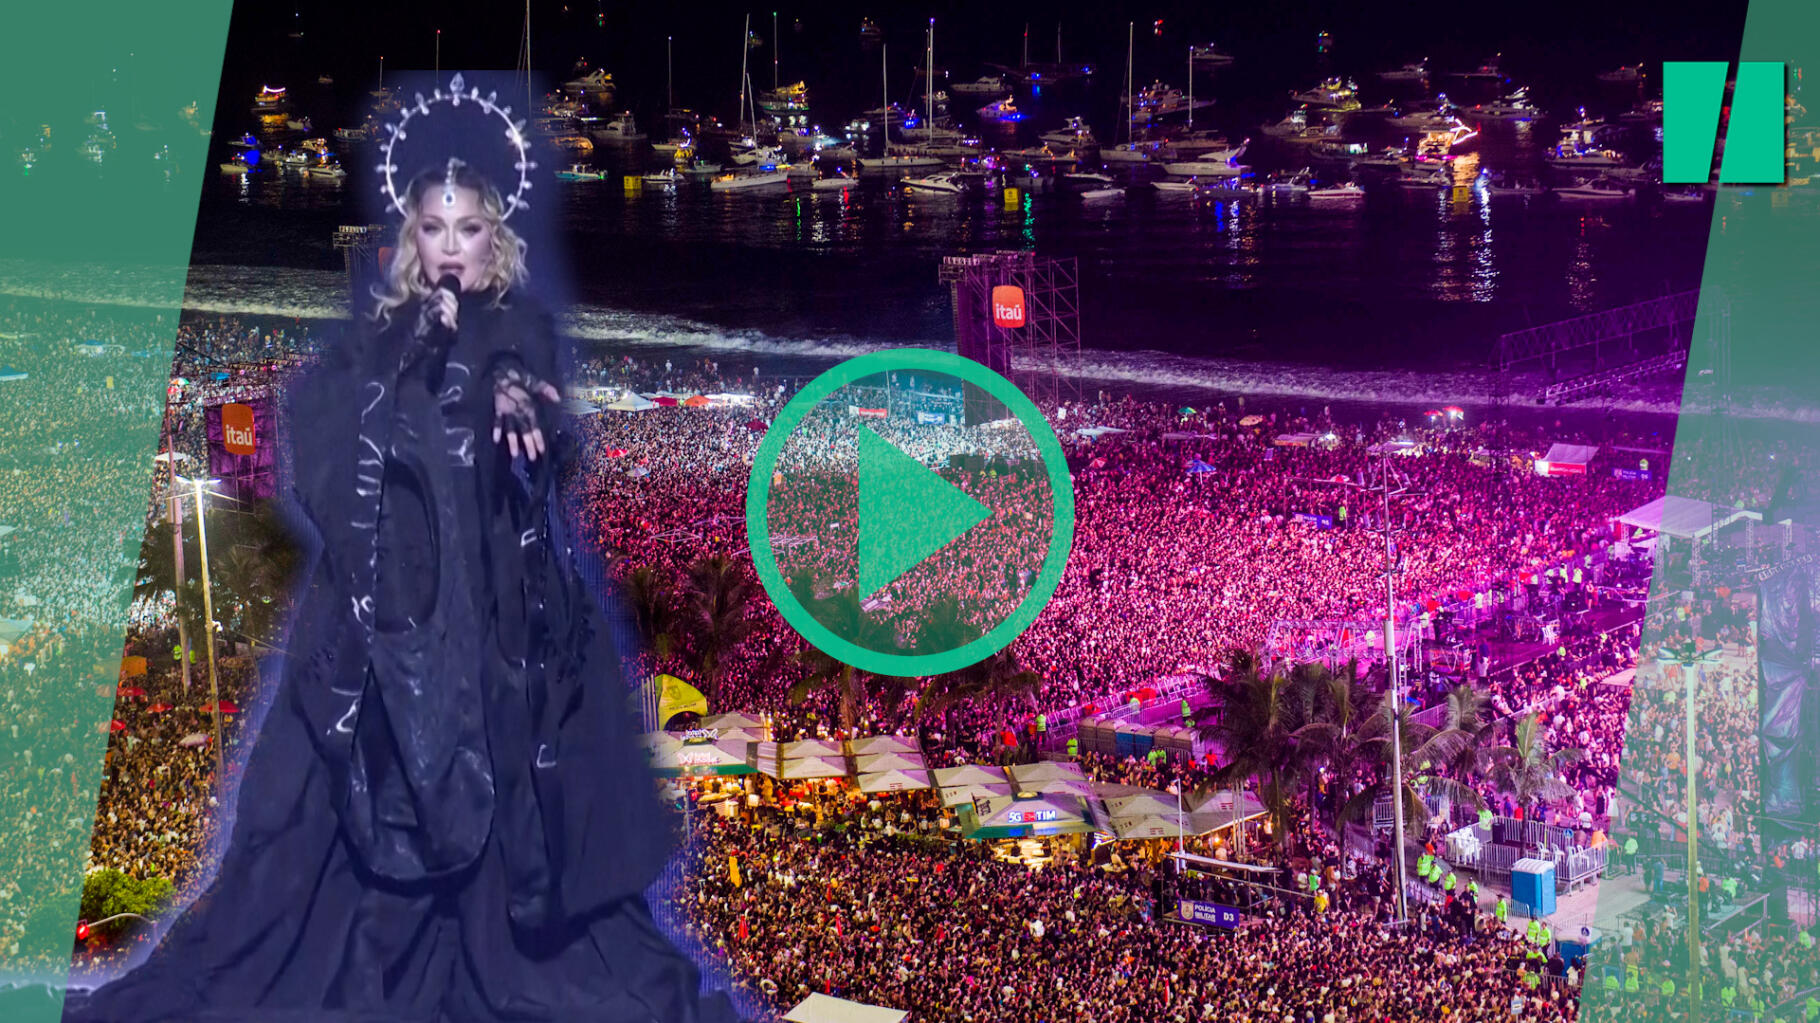 Madonna speelt “Like a Virgin” tijdens een concert in Rio de Janeiro voor 1,5 miljoen mensen